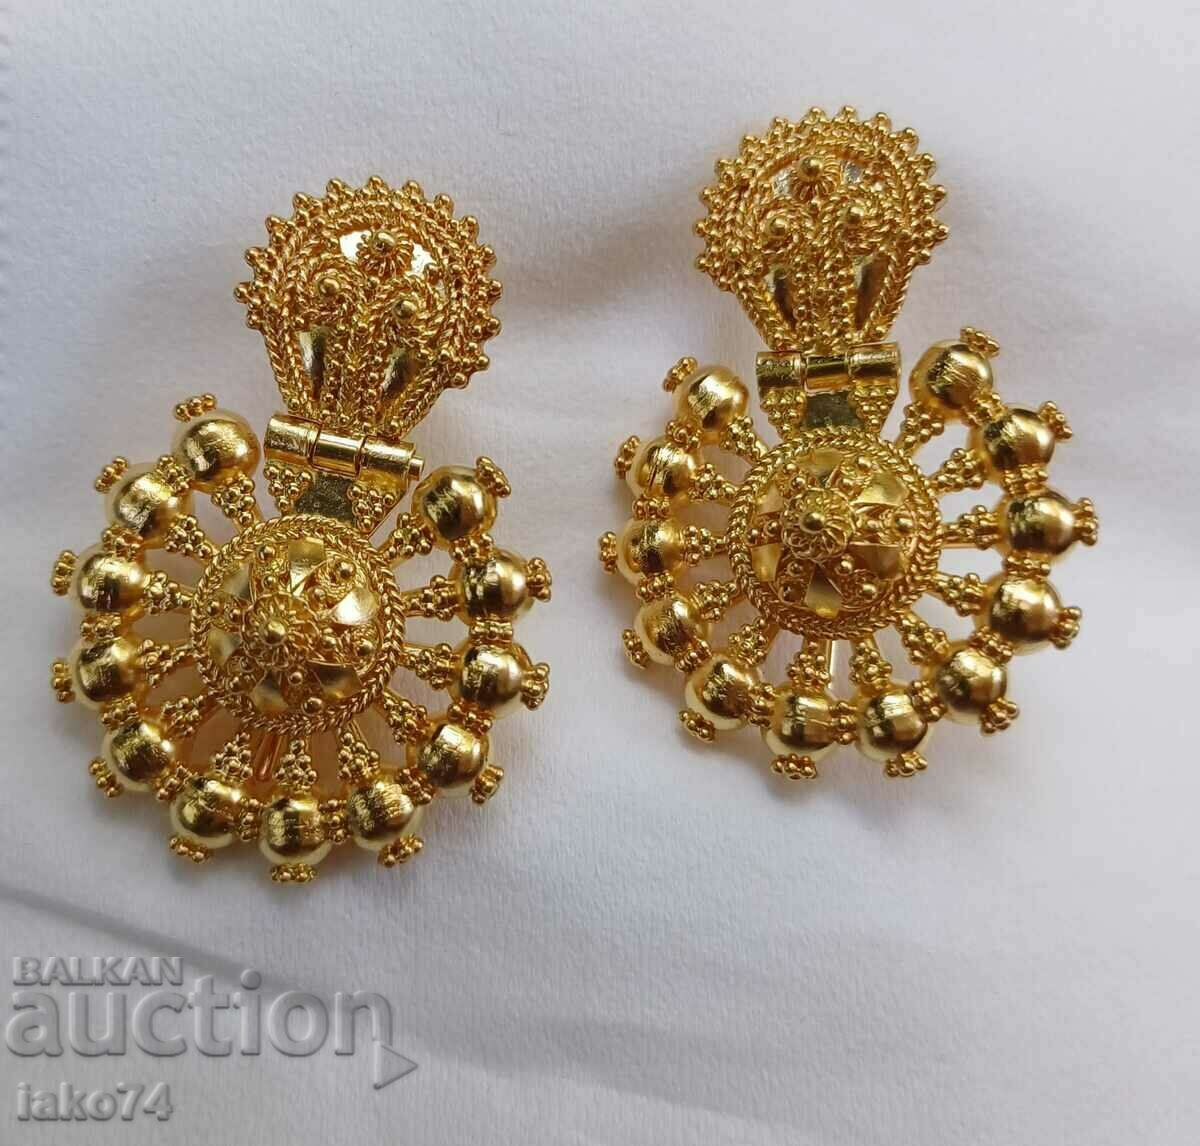 Arpalium earrings gold over 23 carat handmade 3 cm diam.